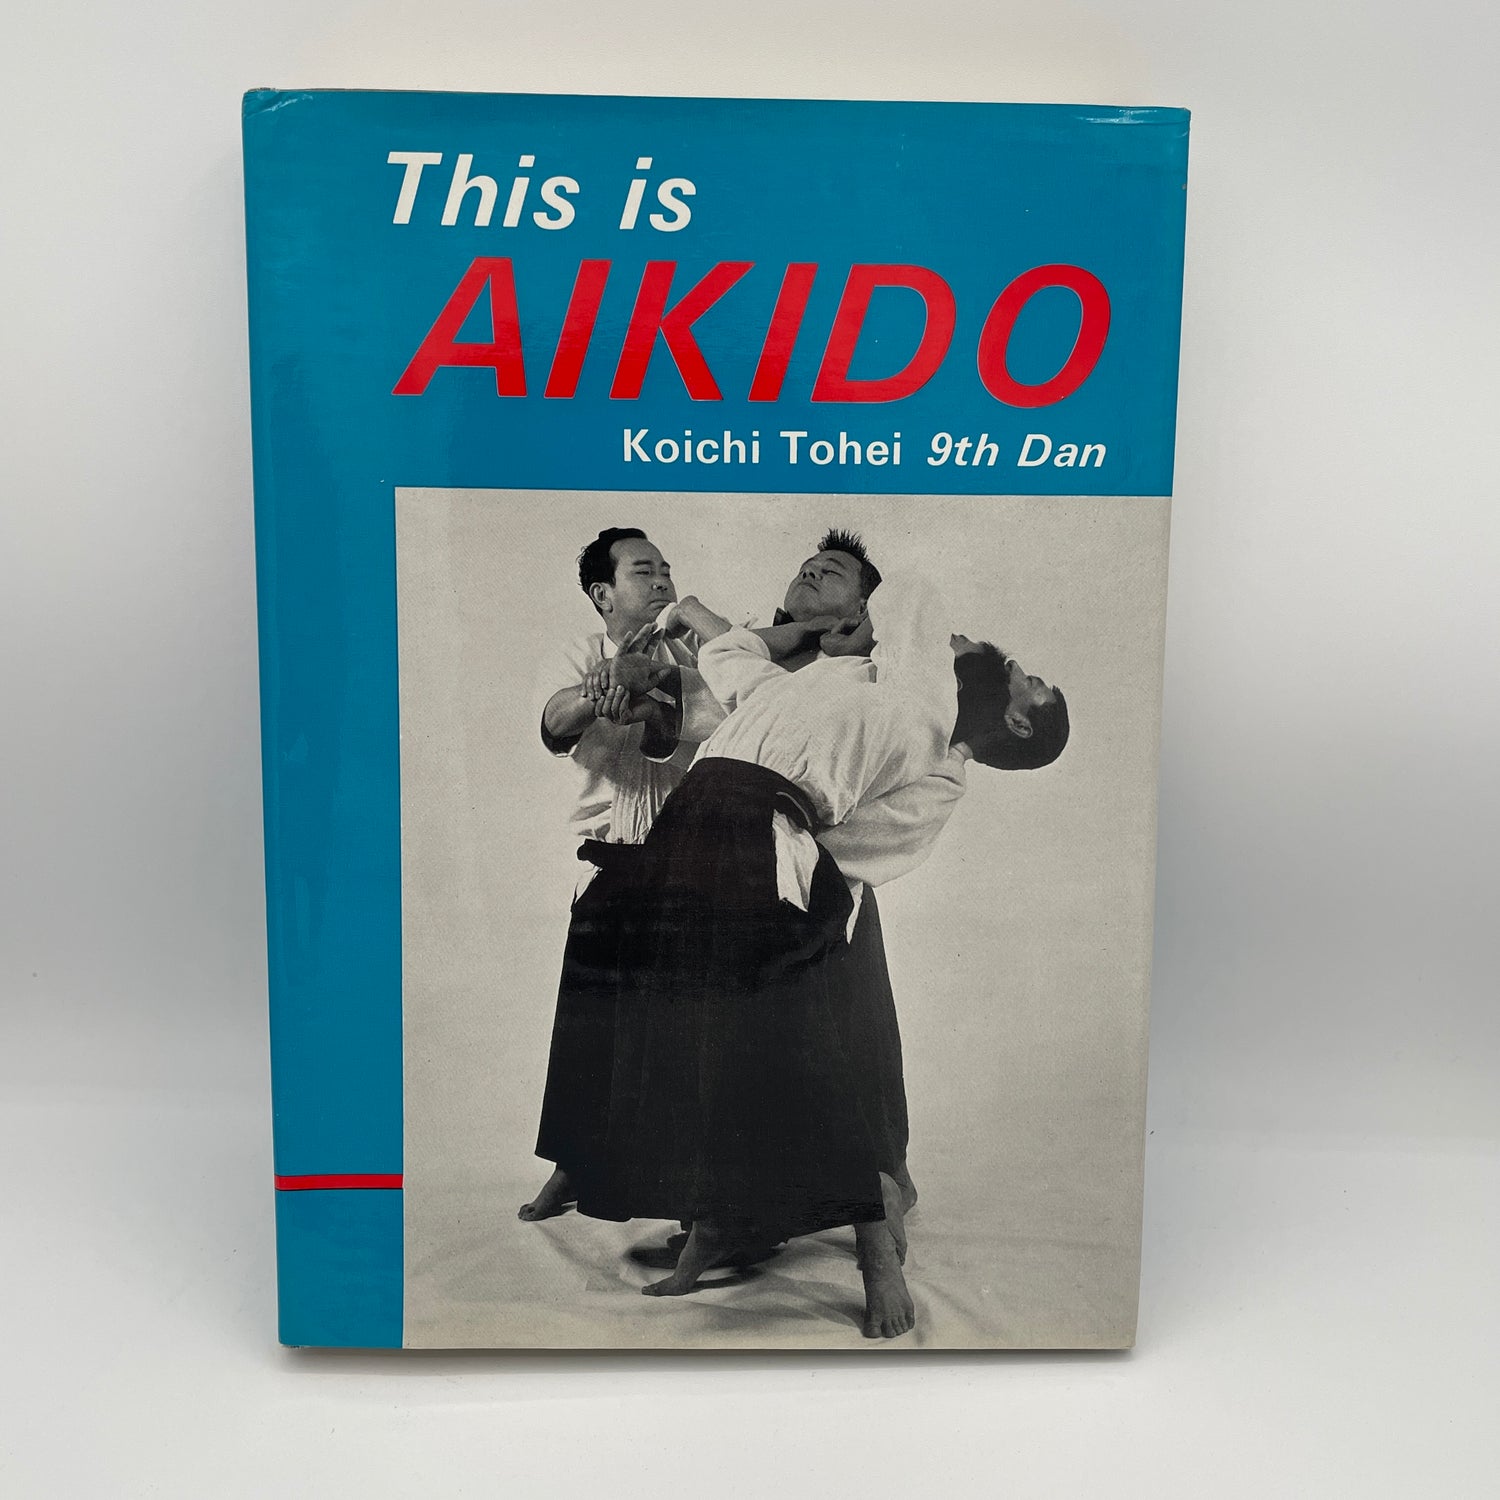 Este es el libro de Aikido de Koichi Tohei (usado)